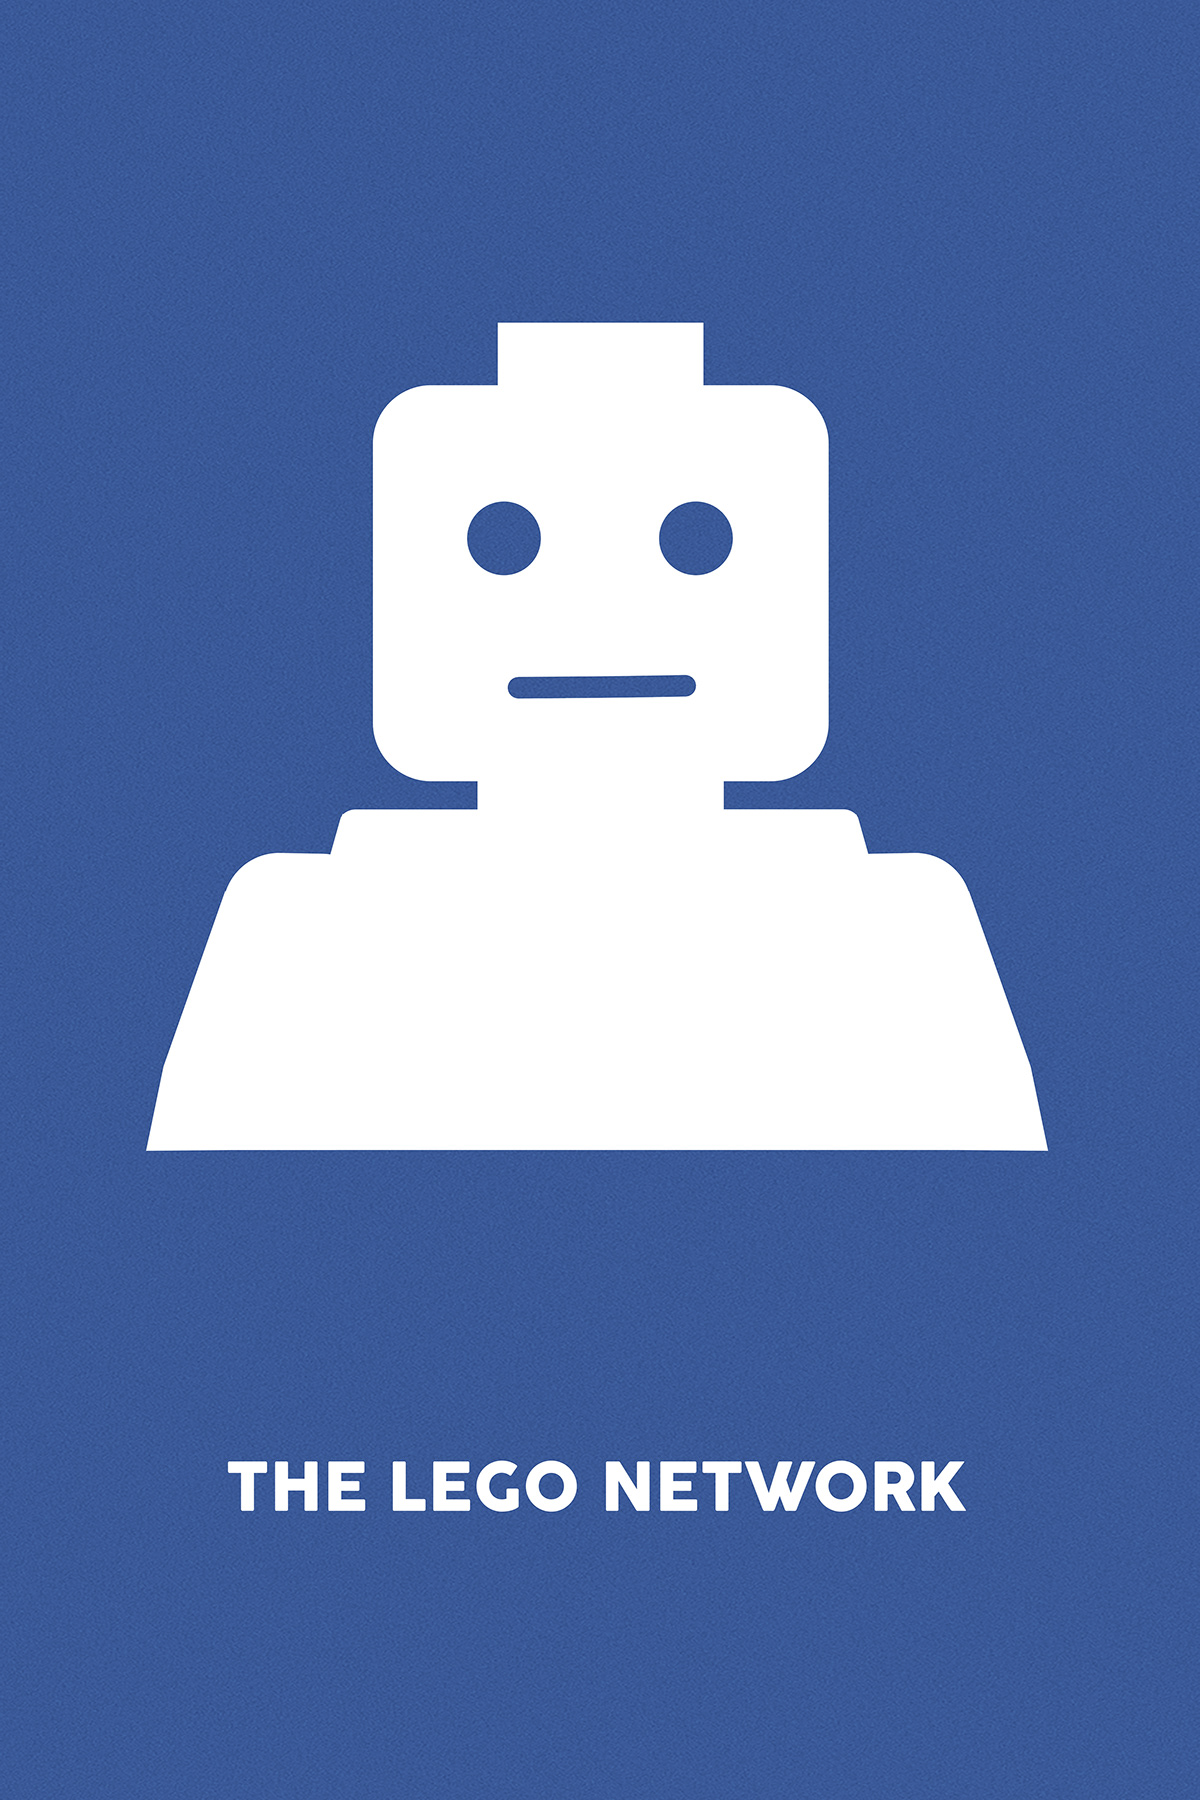 LEGO Legos davidfincher seven se7en Fightclub thesocialnetwork facebook movie filmposter movieposter minimalistic Minimalism